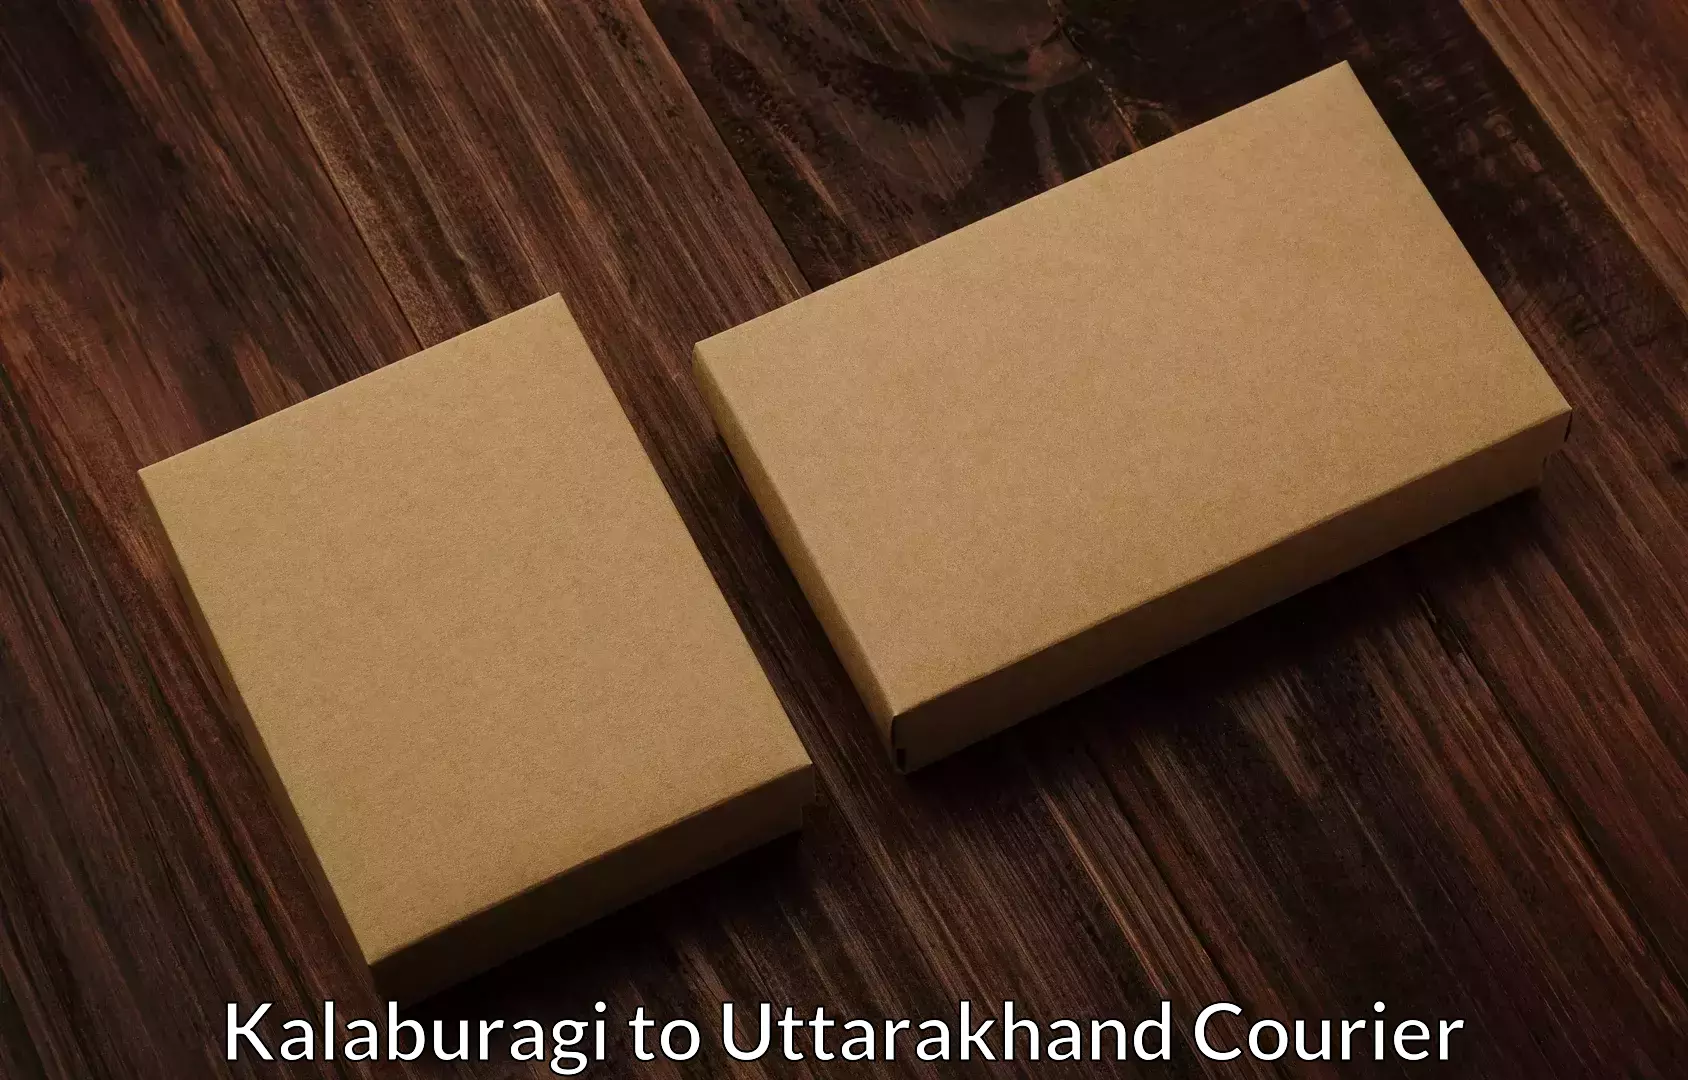 Moving and handling services Kalaburagi to Uttarakhand